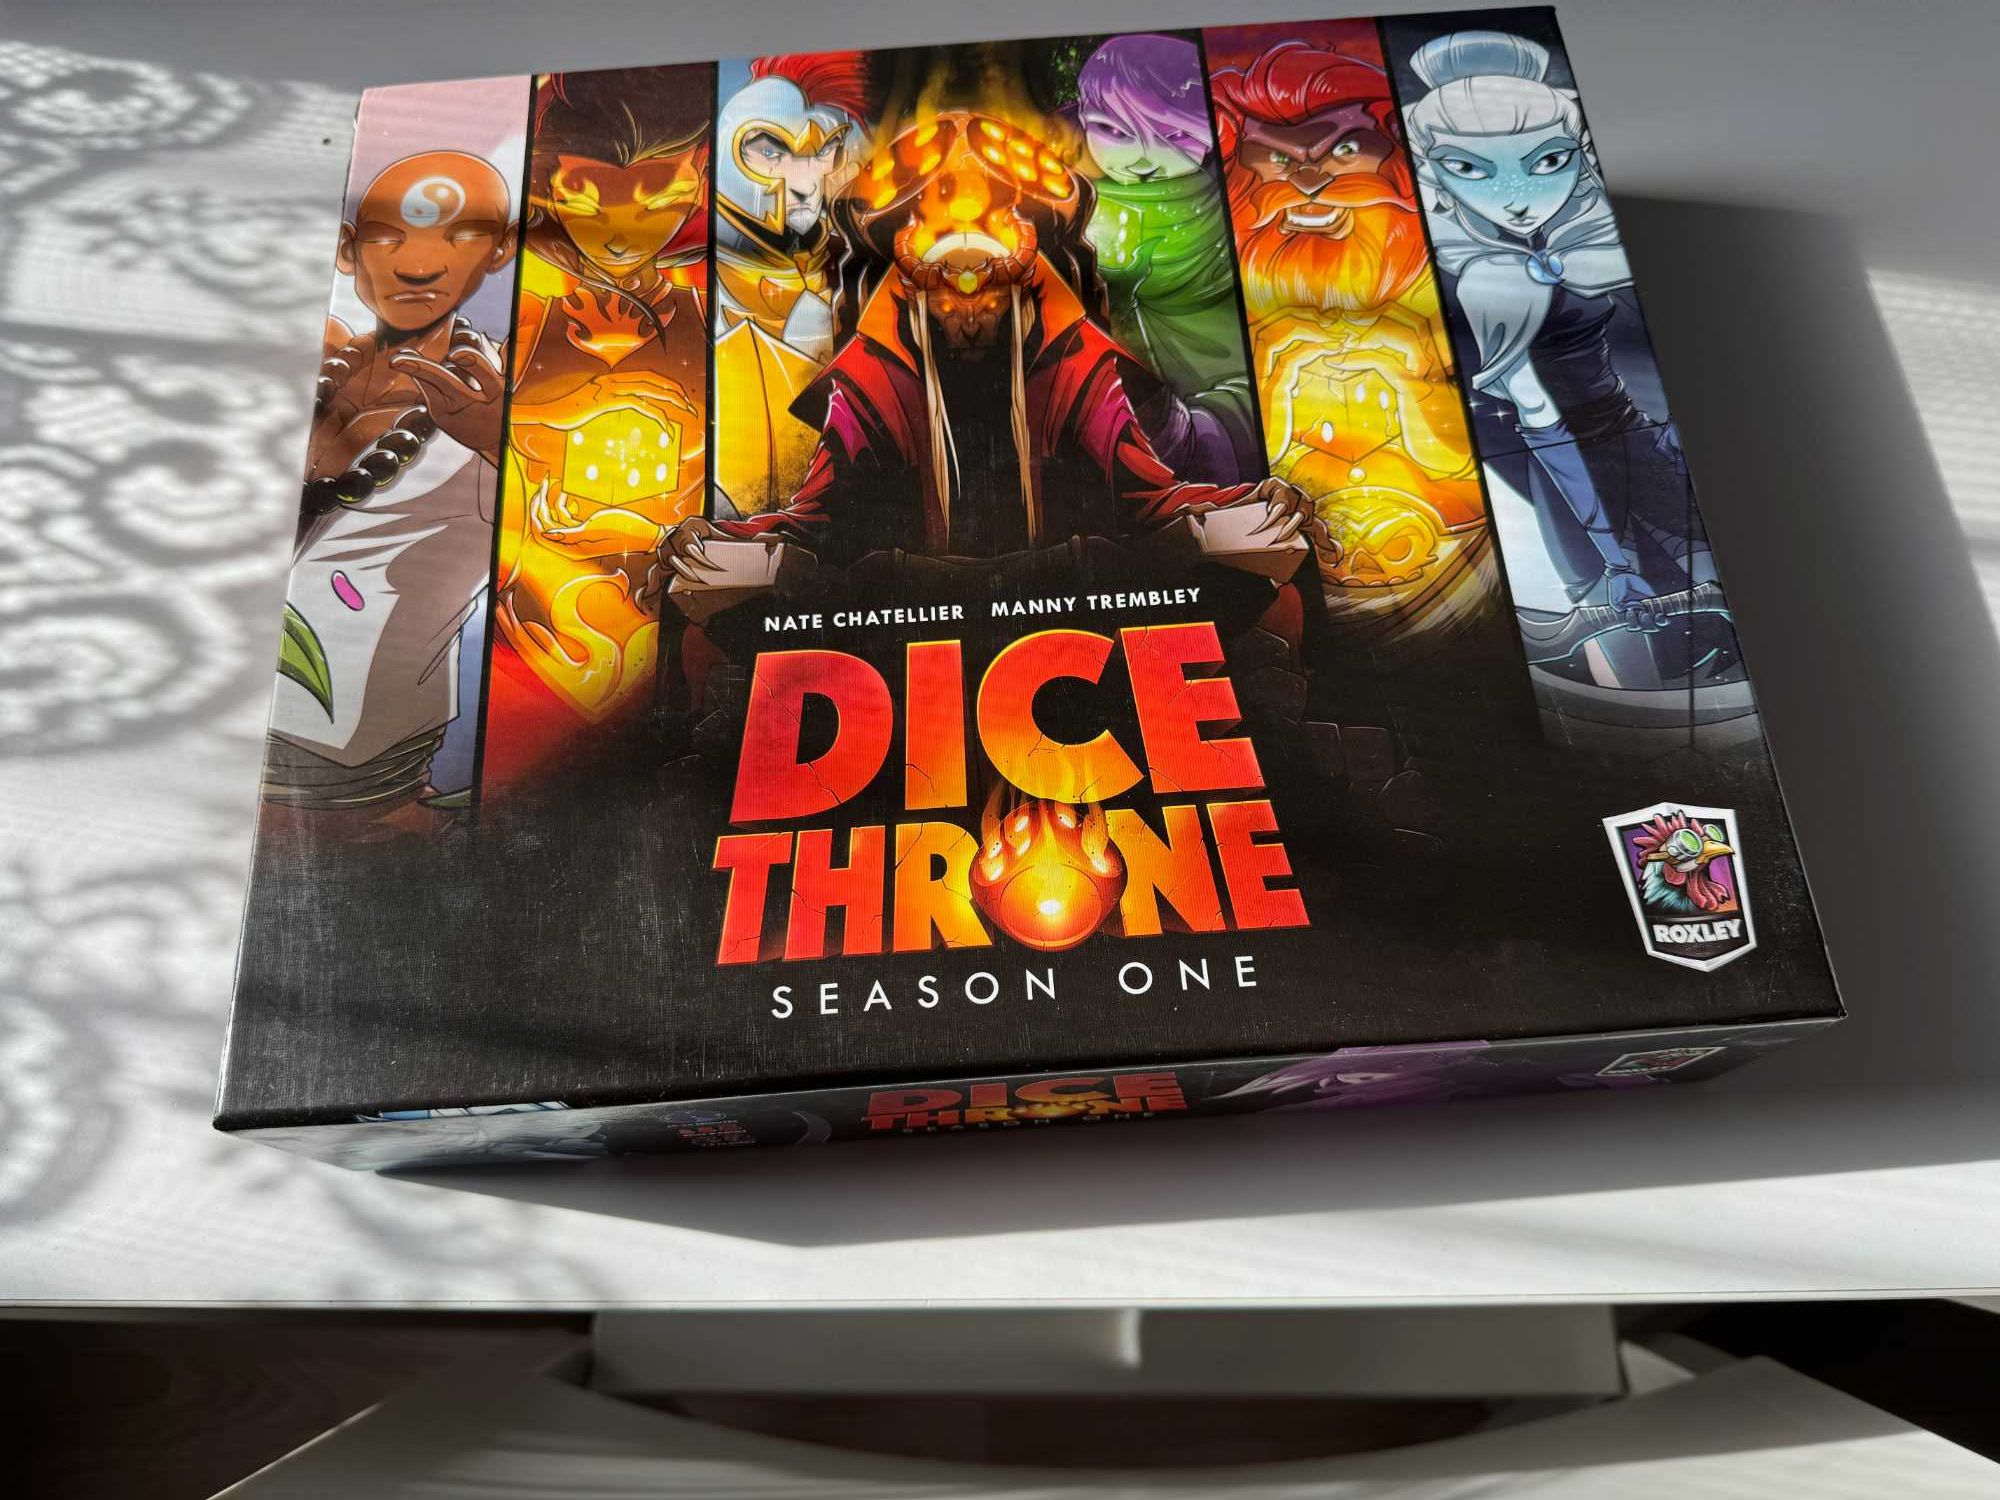 Dice throne - Season 1